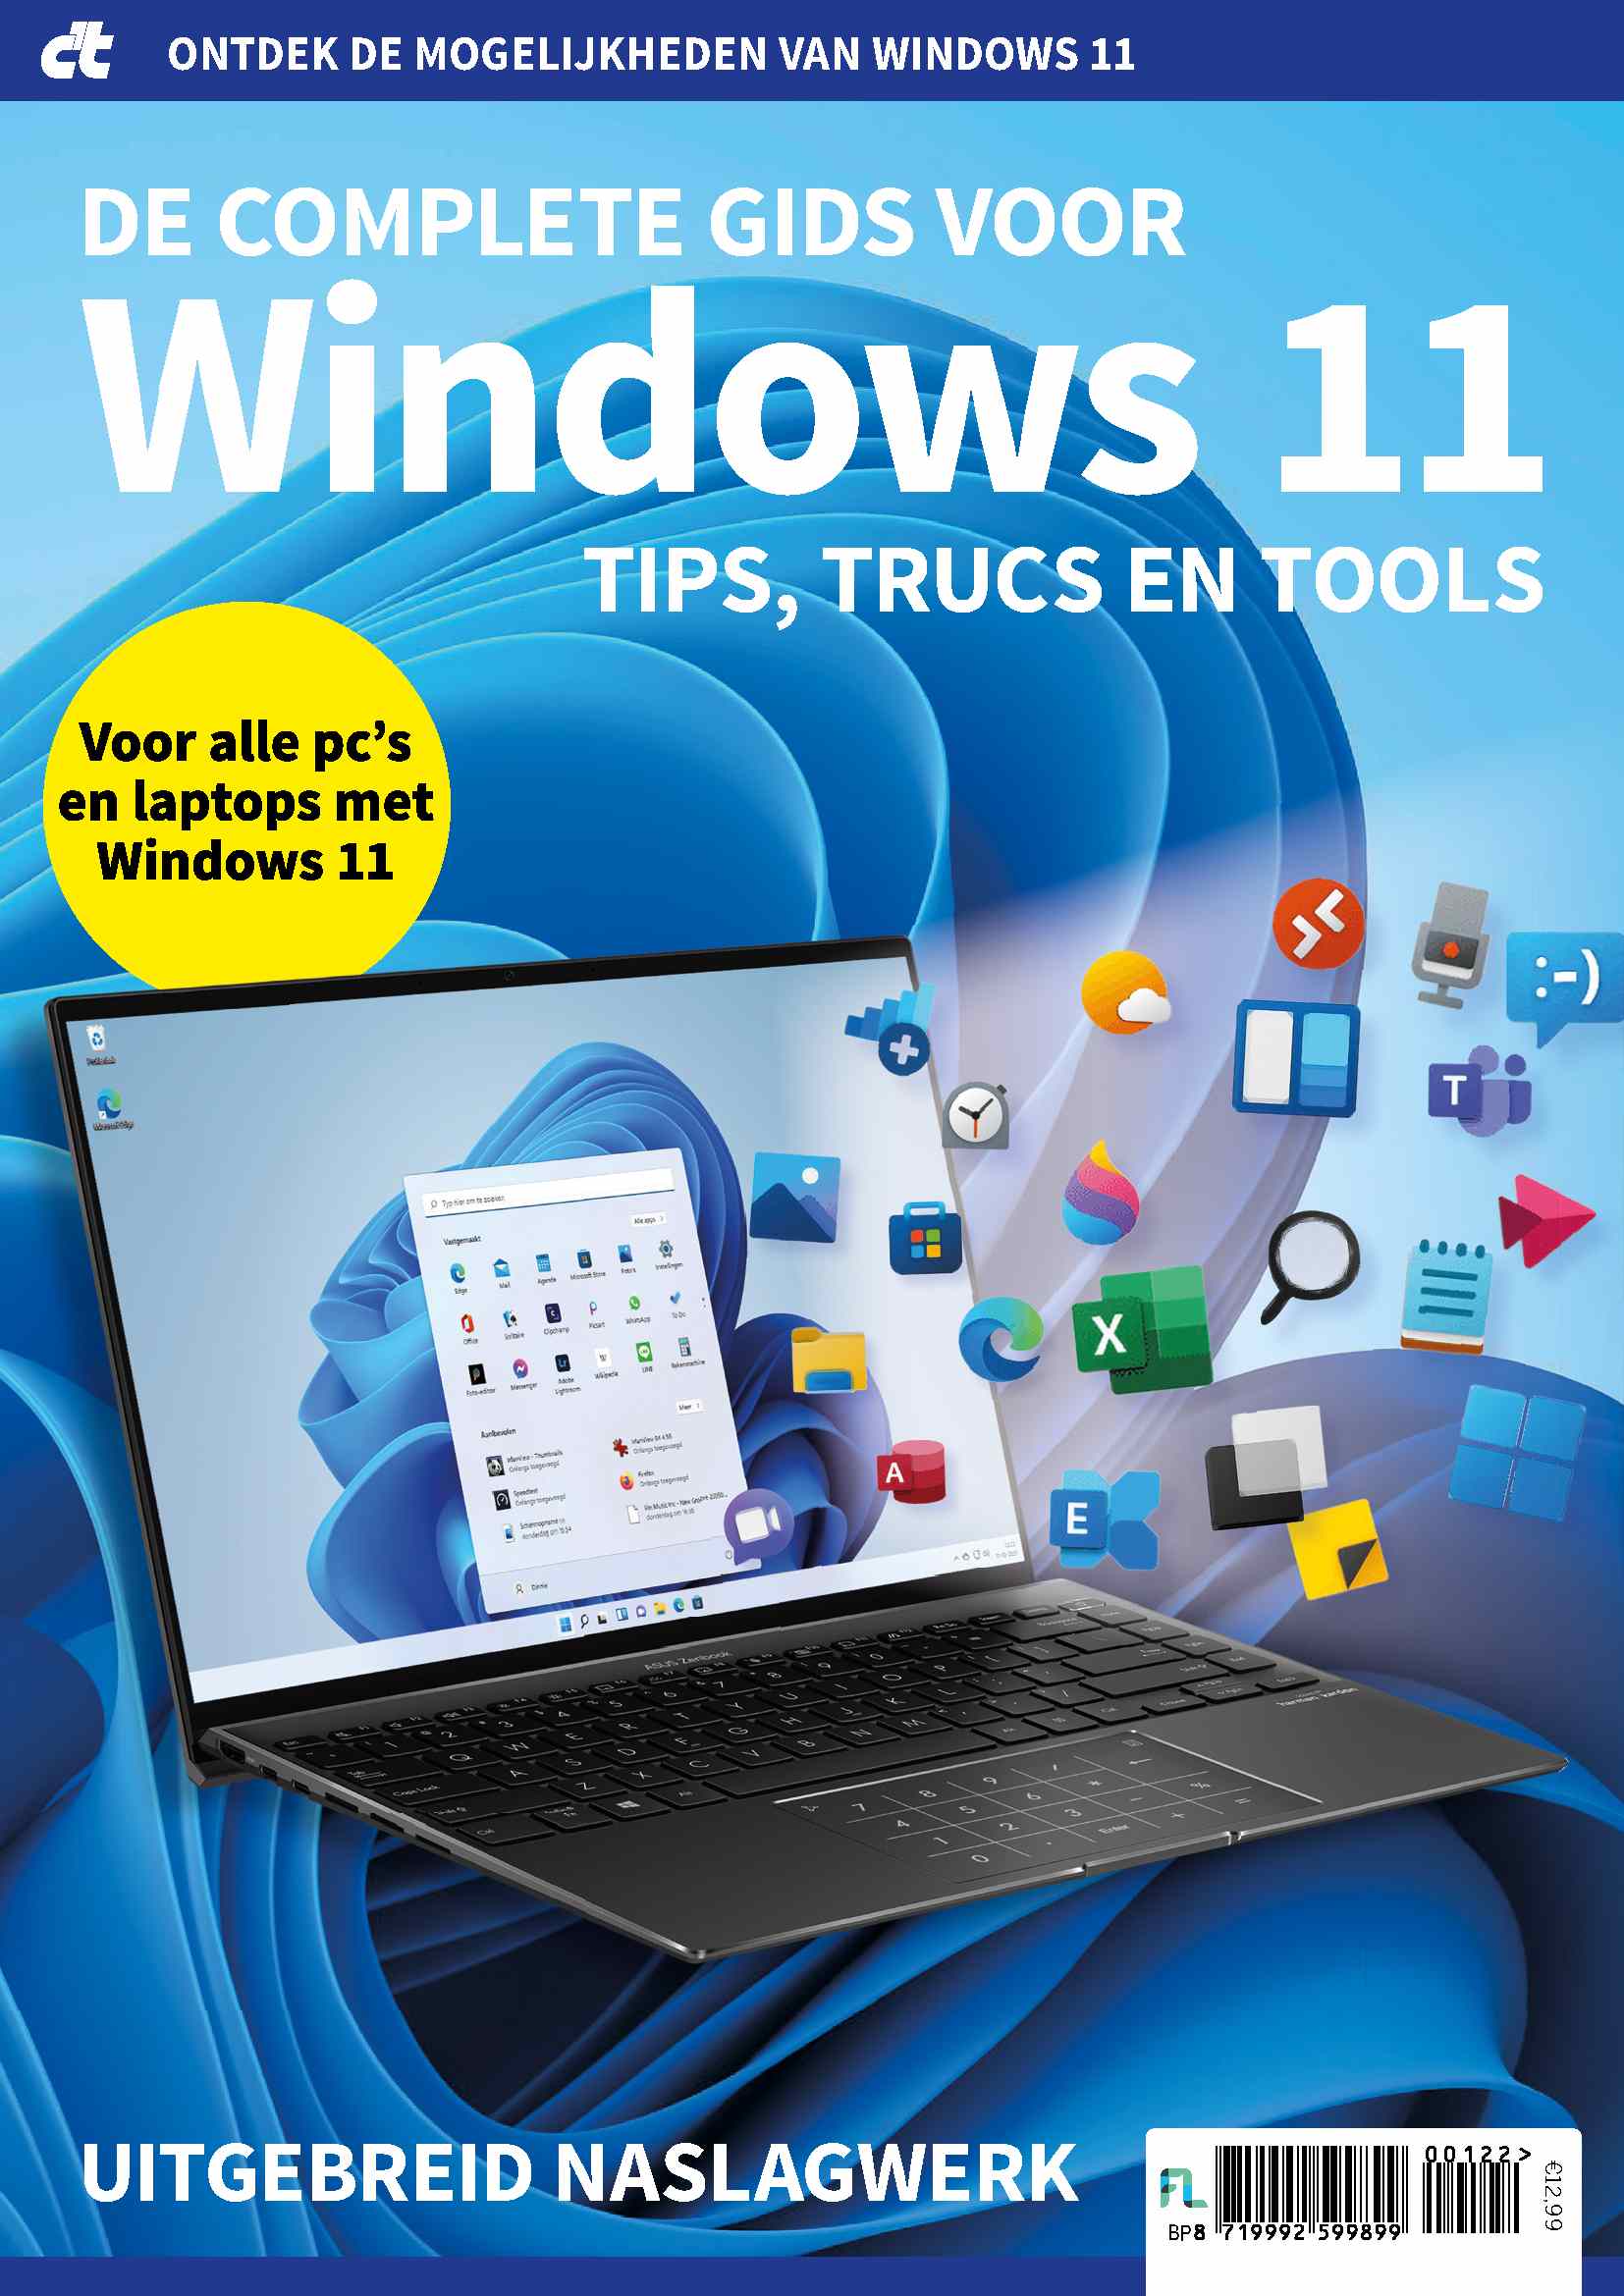 De complete gids voor Windows 11 lr